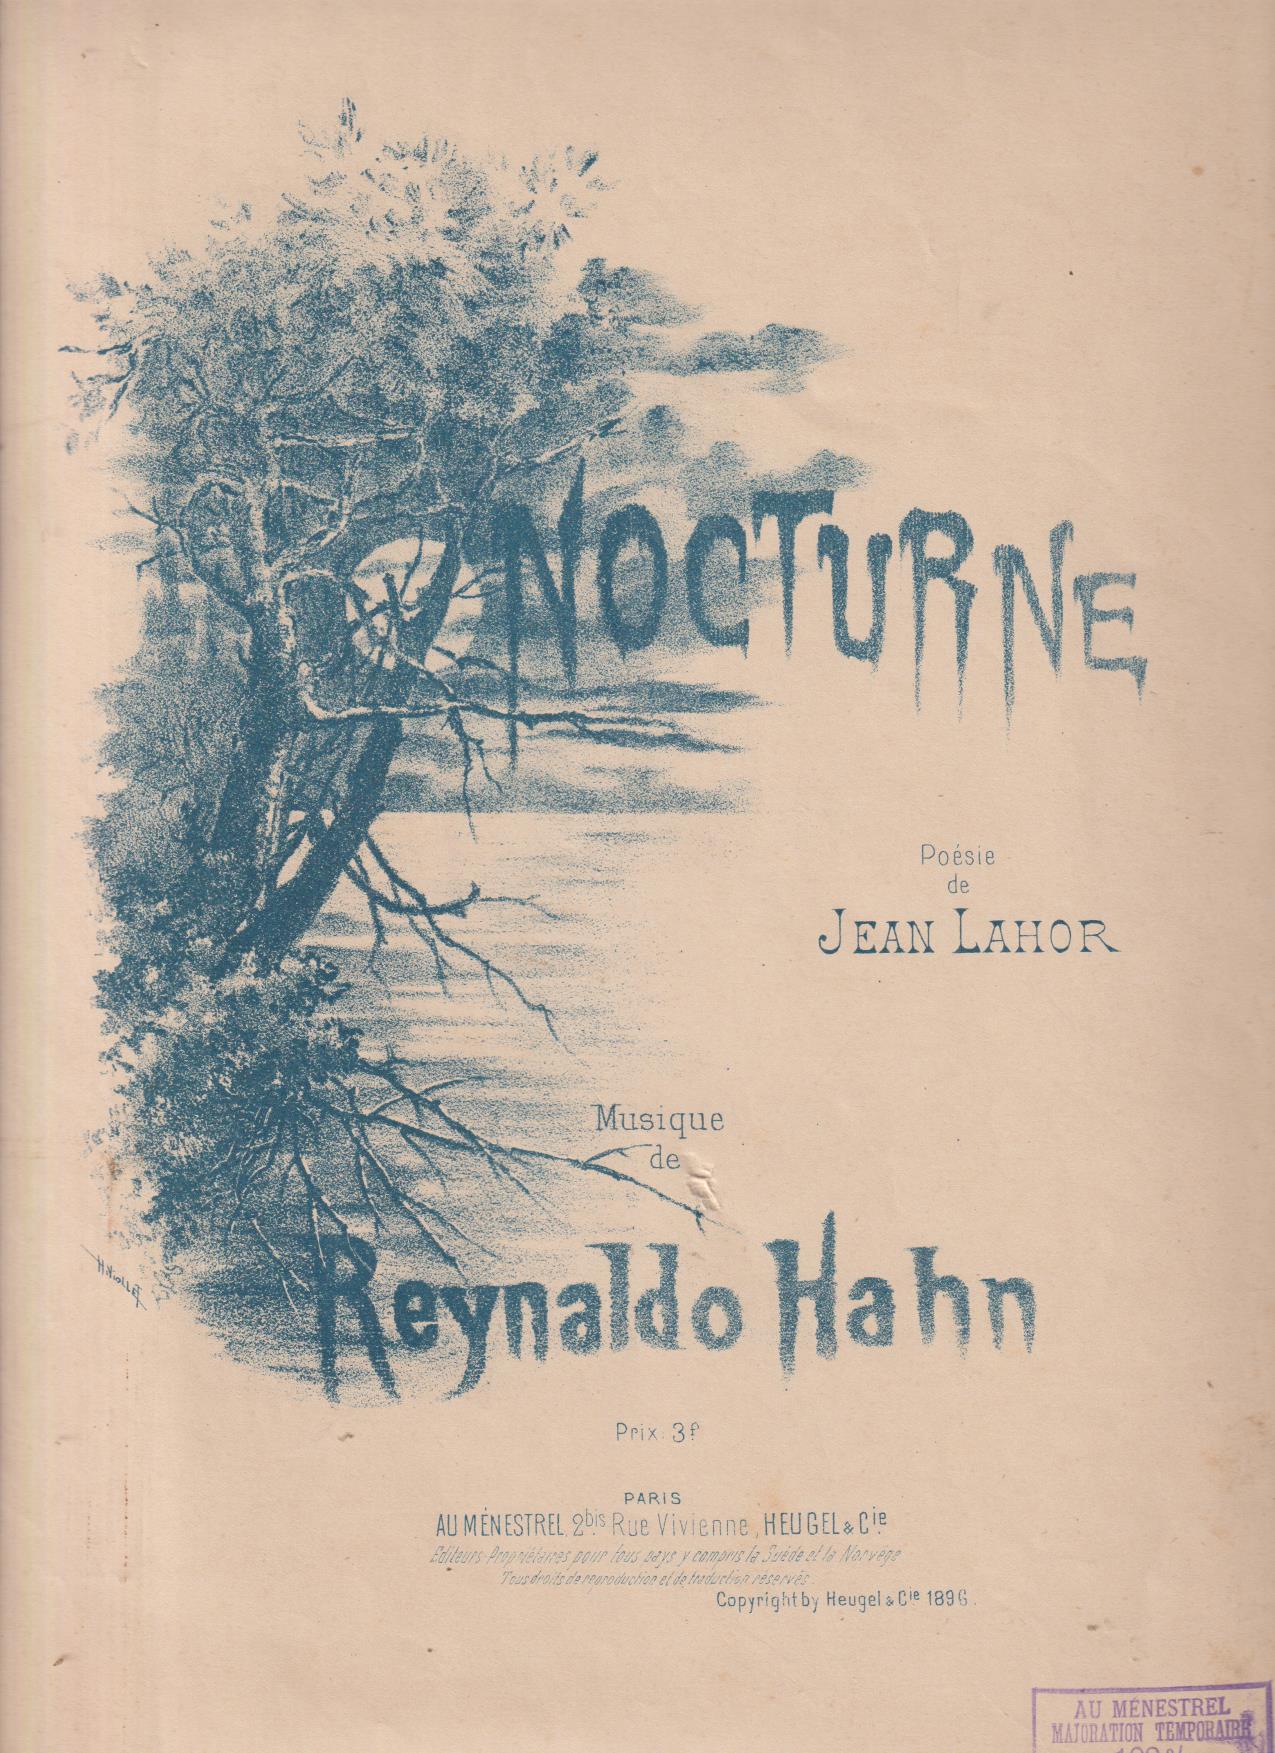 Nocturne. Poesie de Jean Lahor, Musique de Reynaldo Hahn (35x27) 3 hojas de partituras